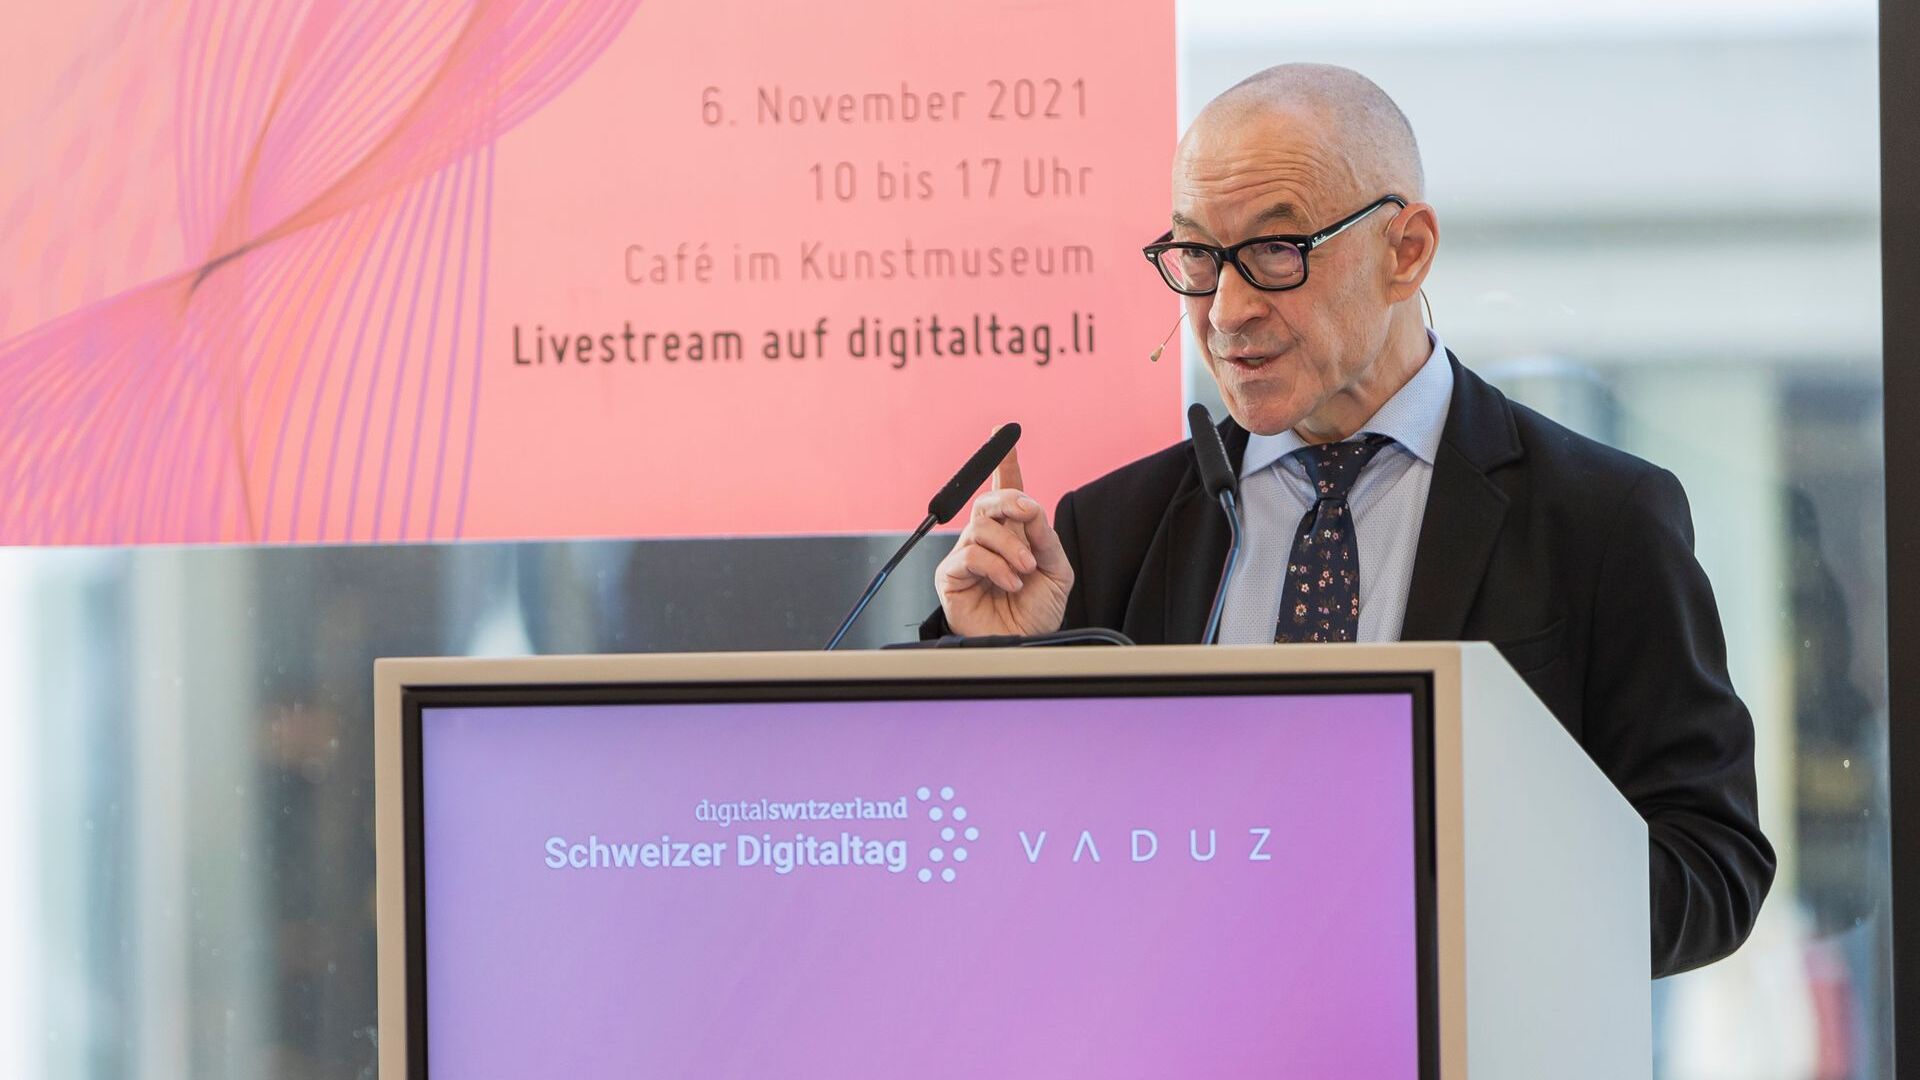 La “Digitaltag Vaduz”, accolta dal Kunstmuseum della capitale del Principato del Liechtenstein sabato 6 novembre 2021, ha suscitato l’entusiasmo di pubblico e relatori in analogia con la “Giornata Digitale Svizzera” del successivo giorno 10: l'intervento del futurologo ed esperto di tendenze tedesco David Bosshart